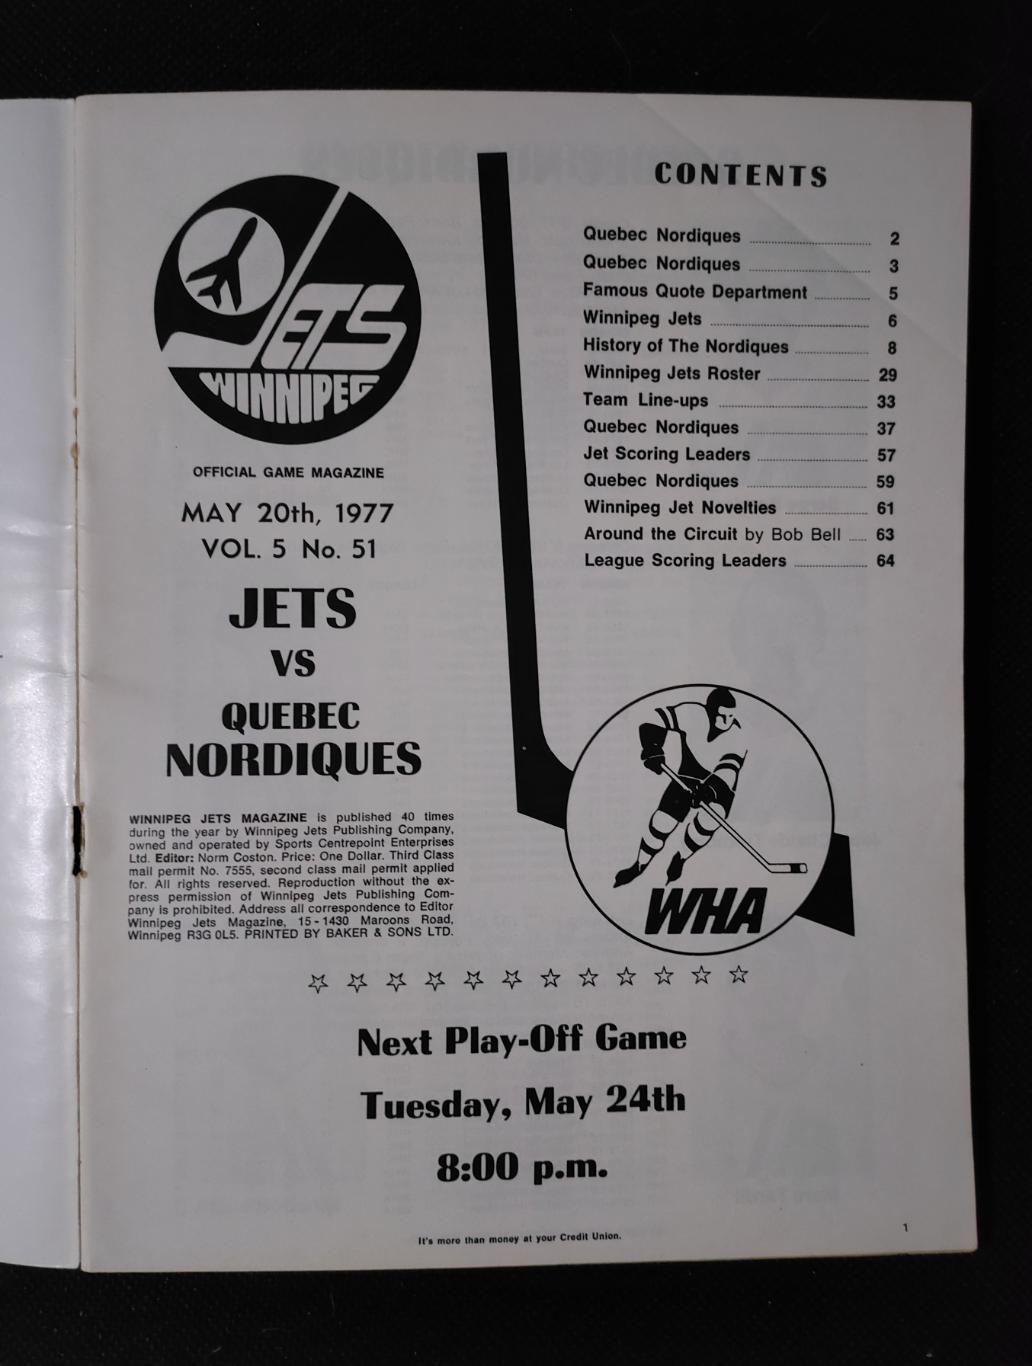 Виннипег Джетс - Квебек Нордикс 1977. ВХА финал 1